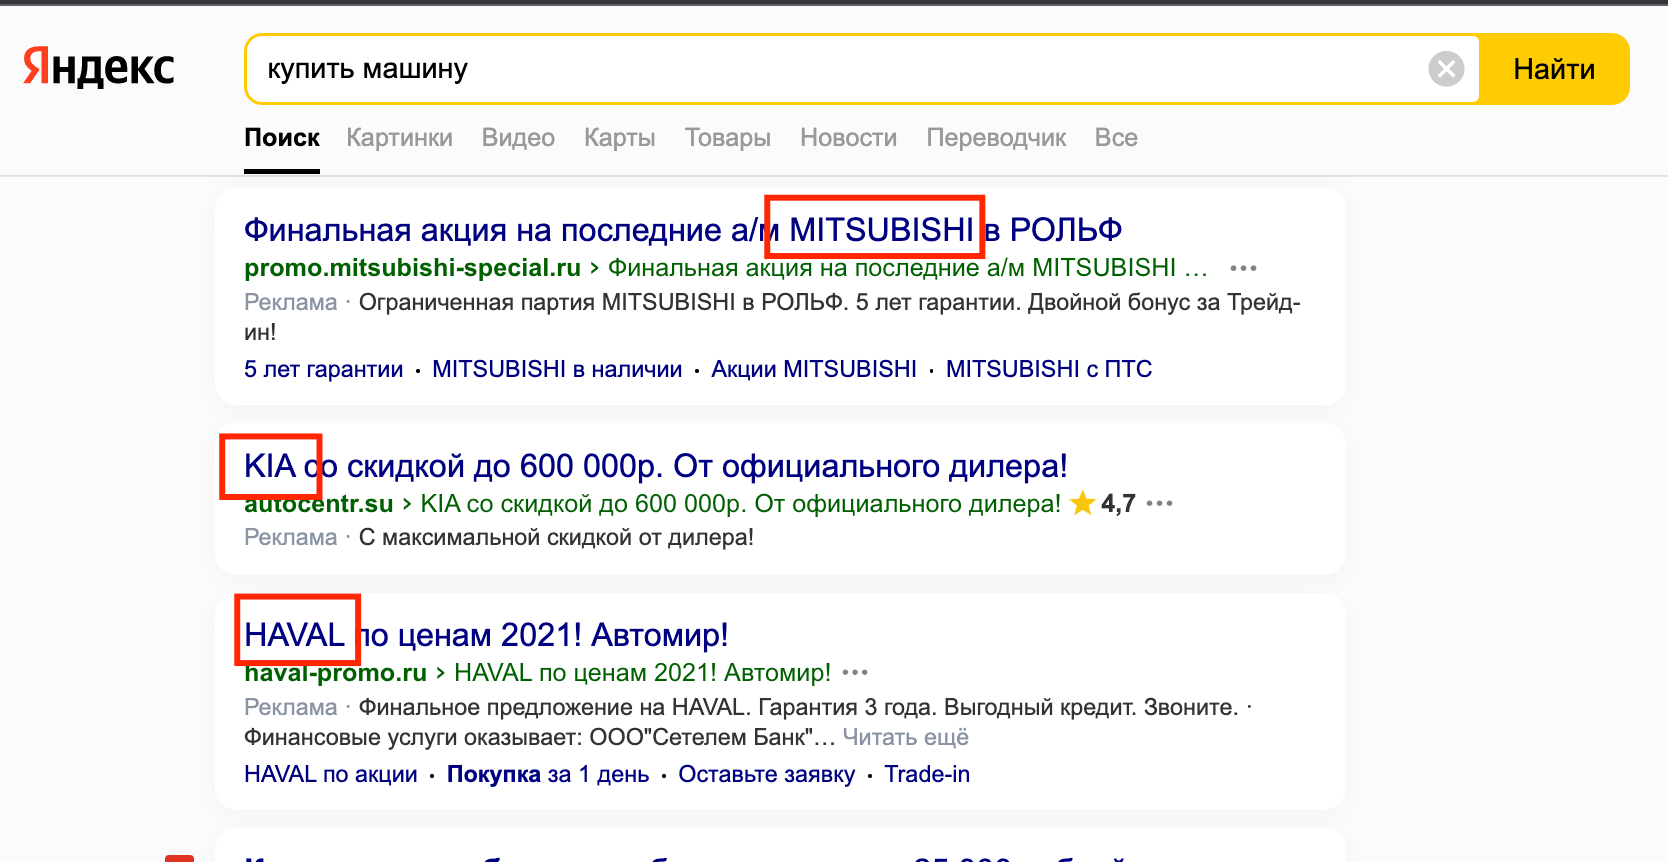 В поисковой выдаче Яндекс по запросу «купить машину» в Москве можно увидеть разные марки автомобилей: KIA, Mitsubishi, Haval